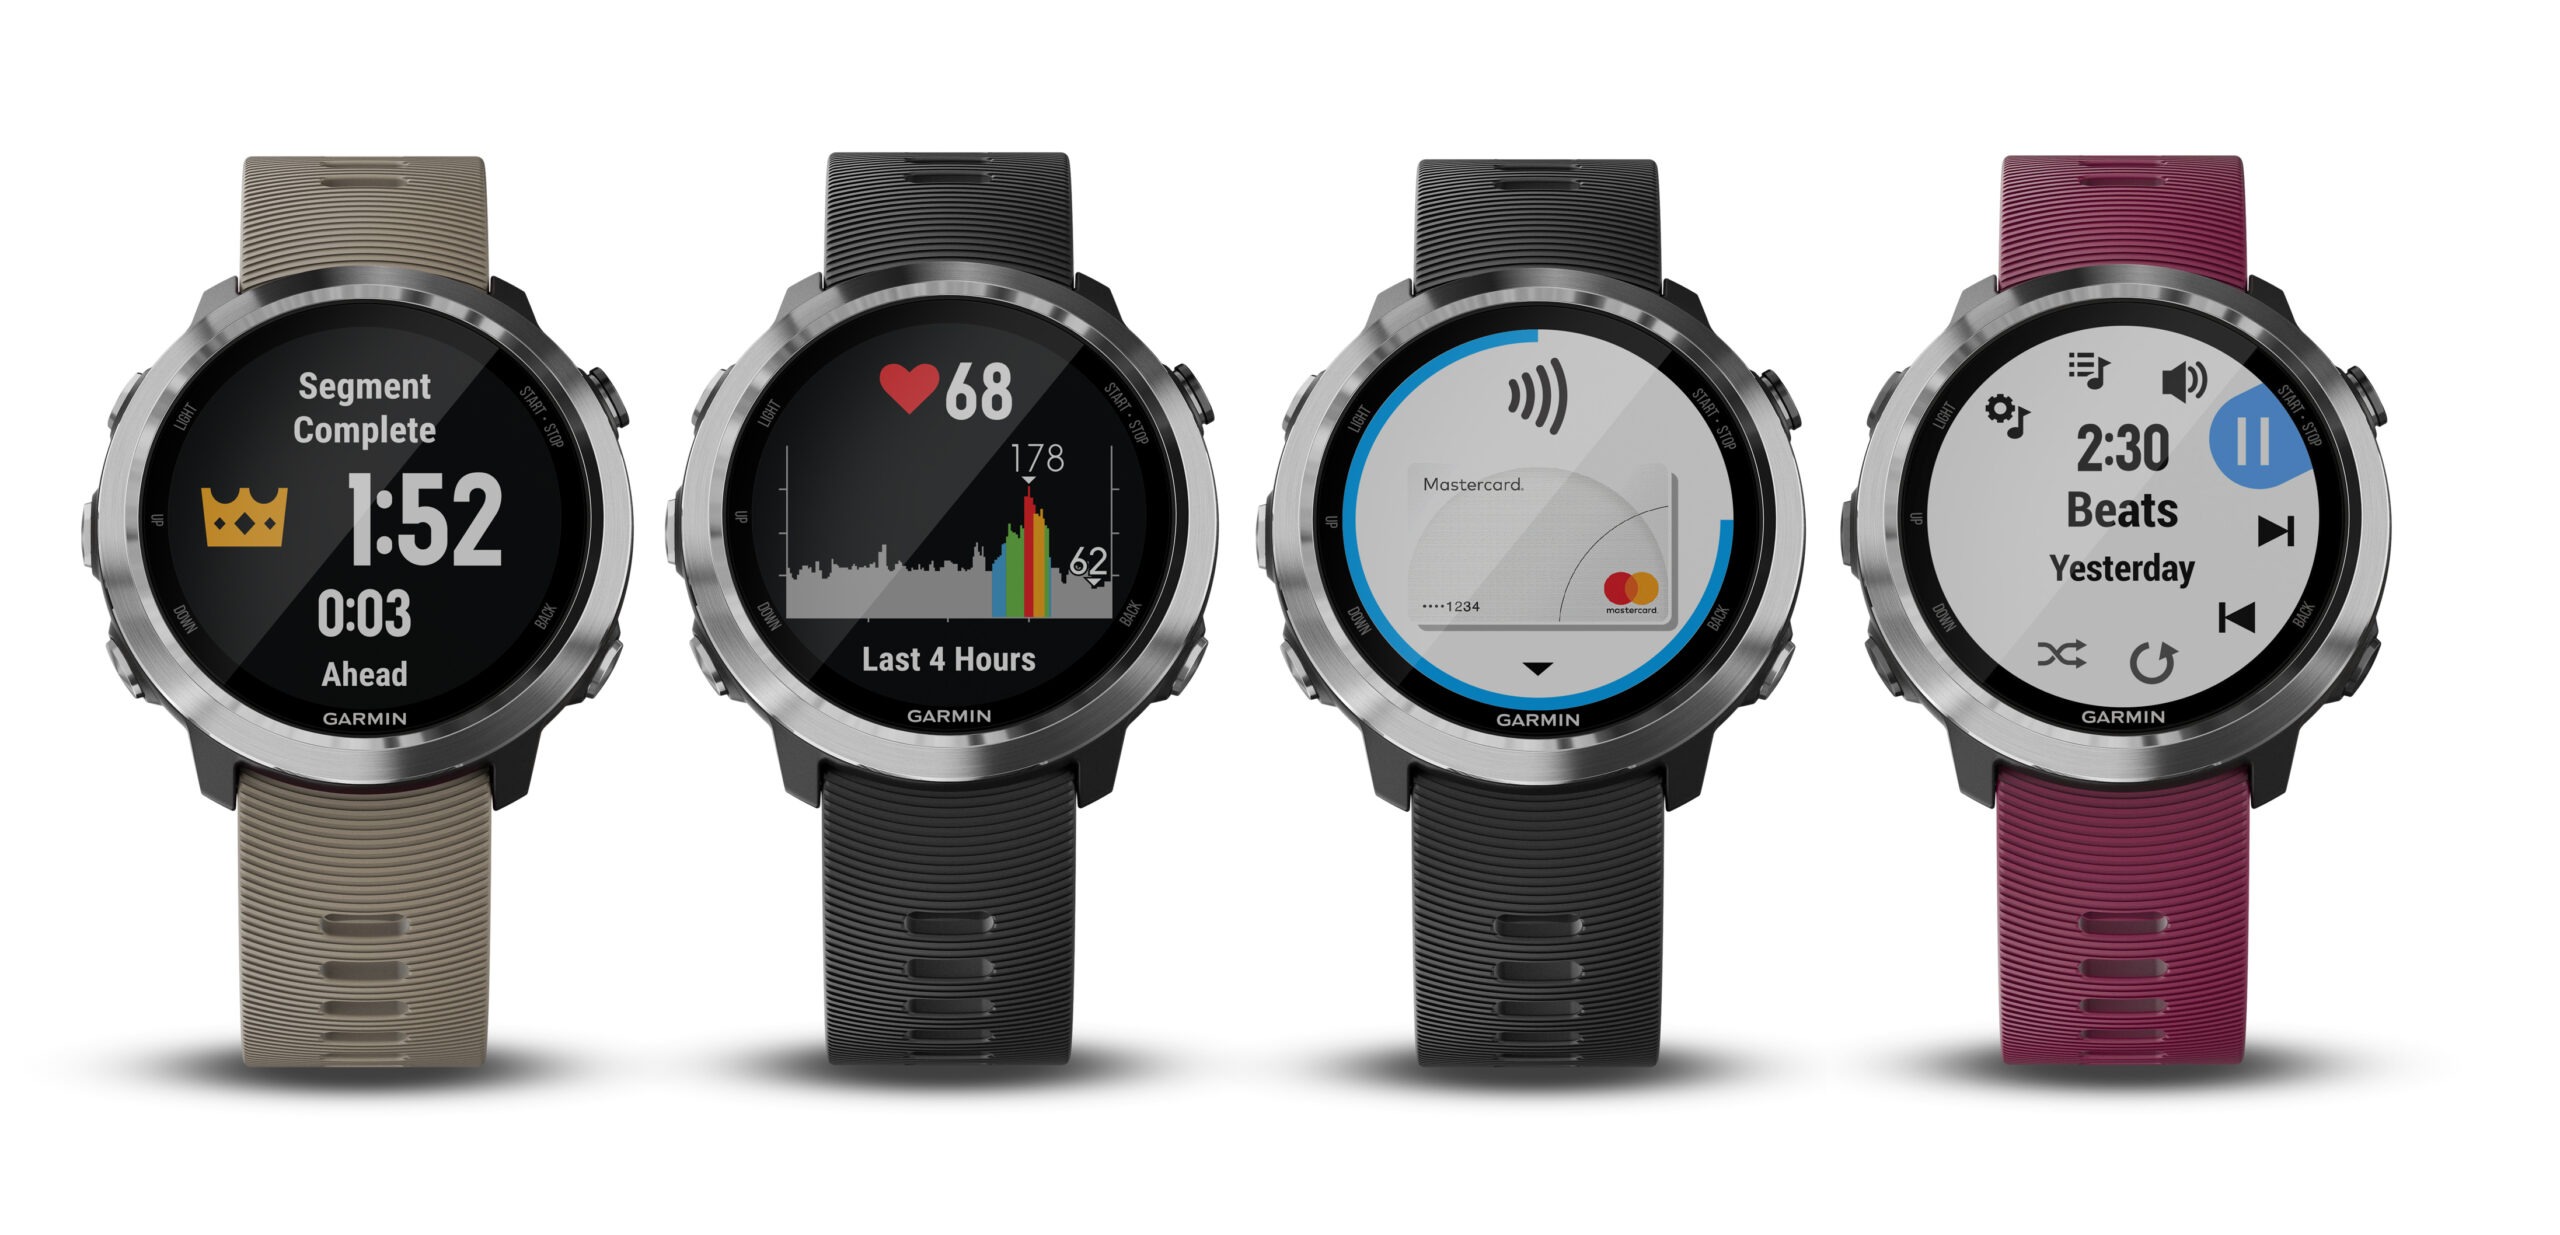 Garmin® presenterar Forerunner 645 Music – en löparklocka med GPS, integrerad musik och Garmin Pay